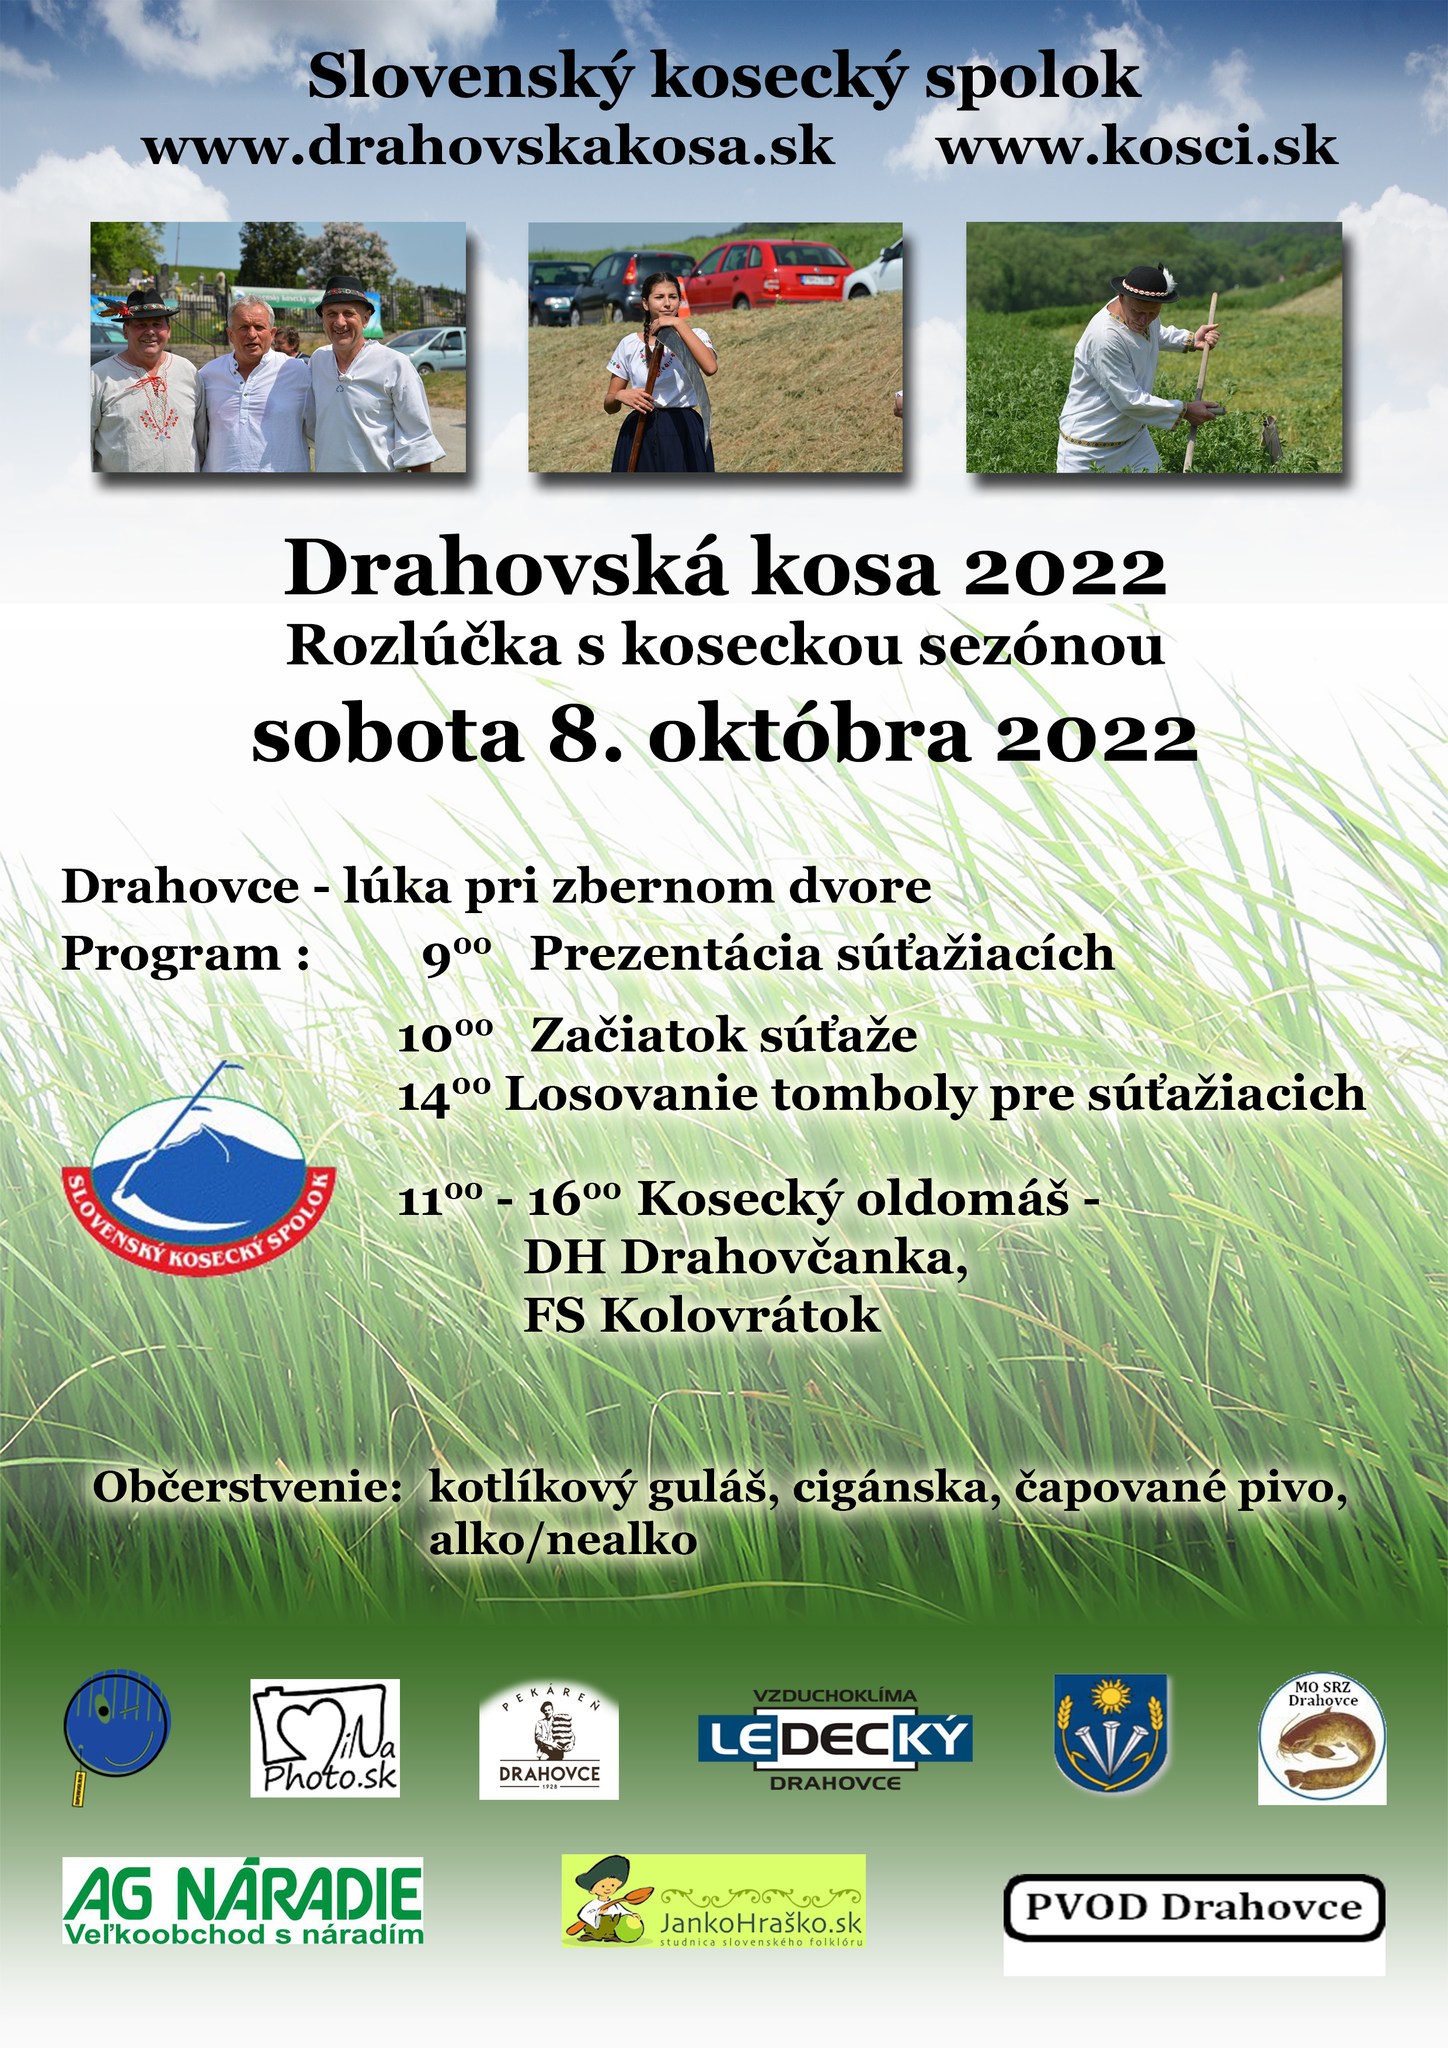 Drahovsk kosa 2022 Drahovce